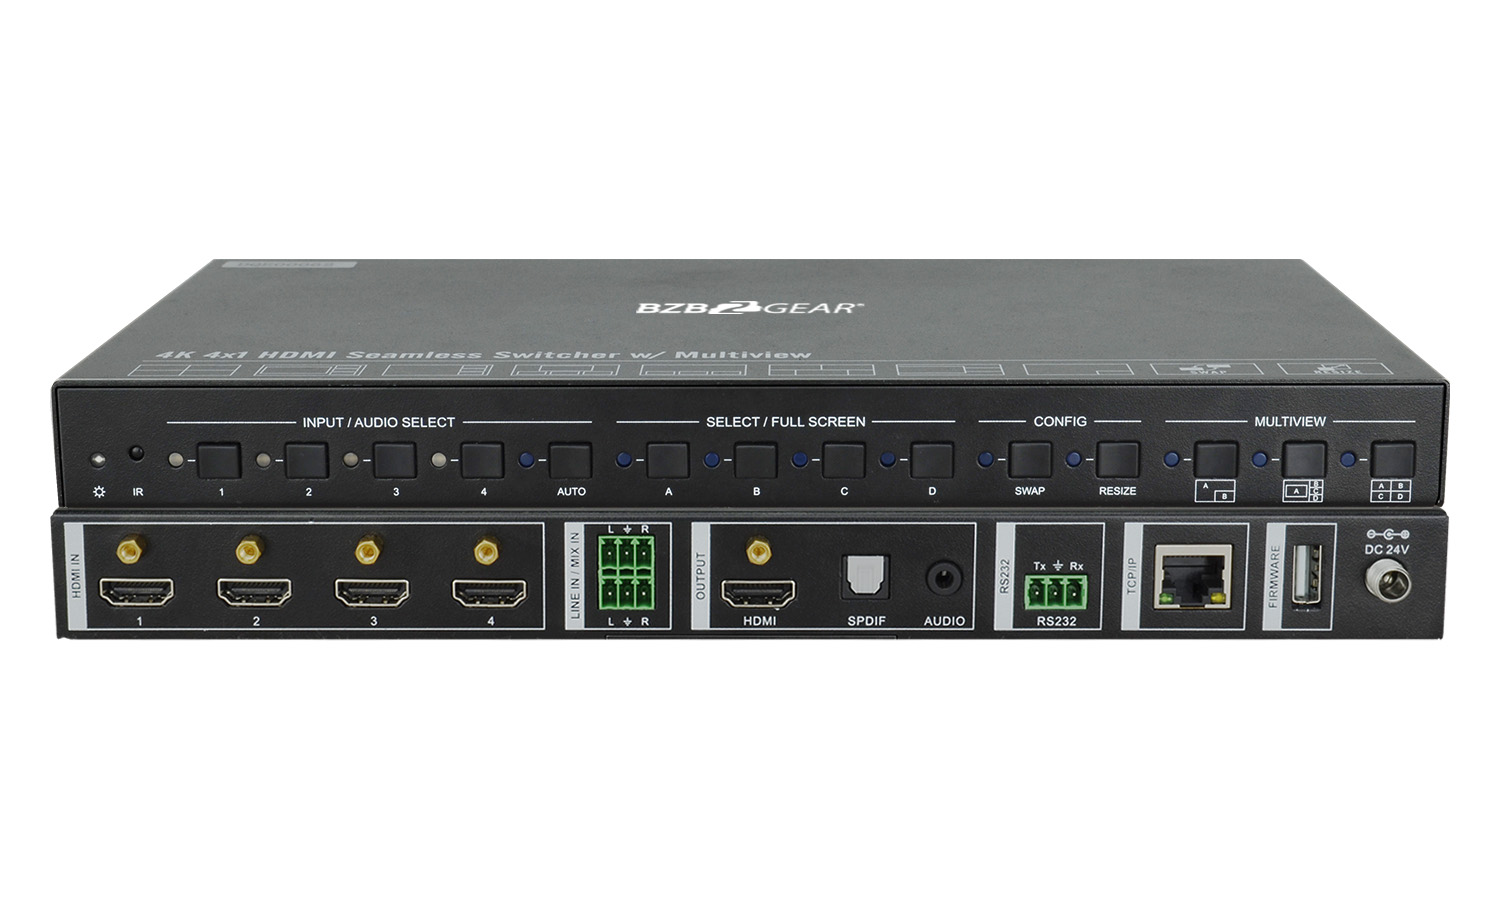 BG-UHD-MSA-4X1 4K 4X1 Seamless Switcher with Multiview by BZBGEAR